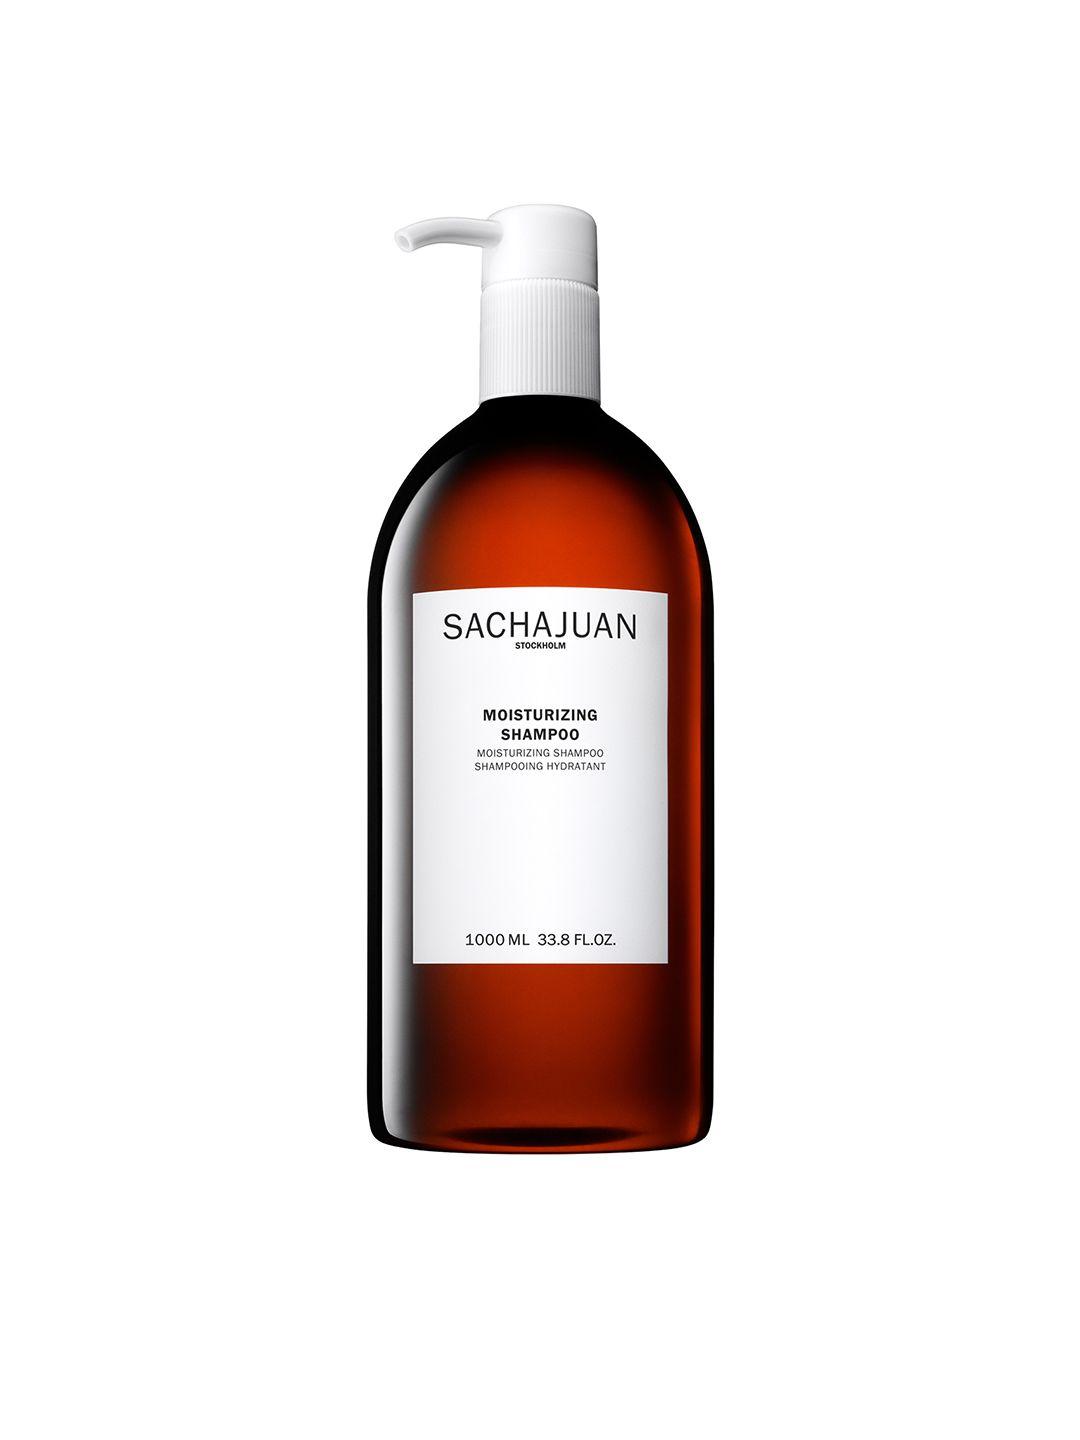 sachajuan moisturizing shampoo 1000ml